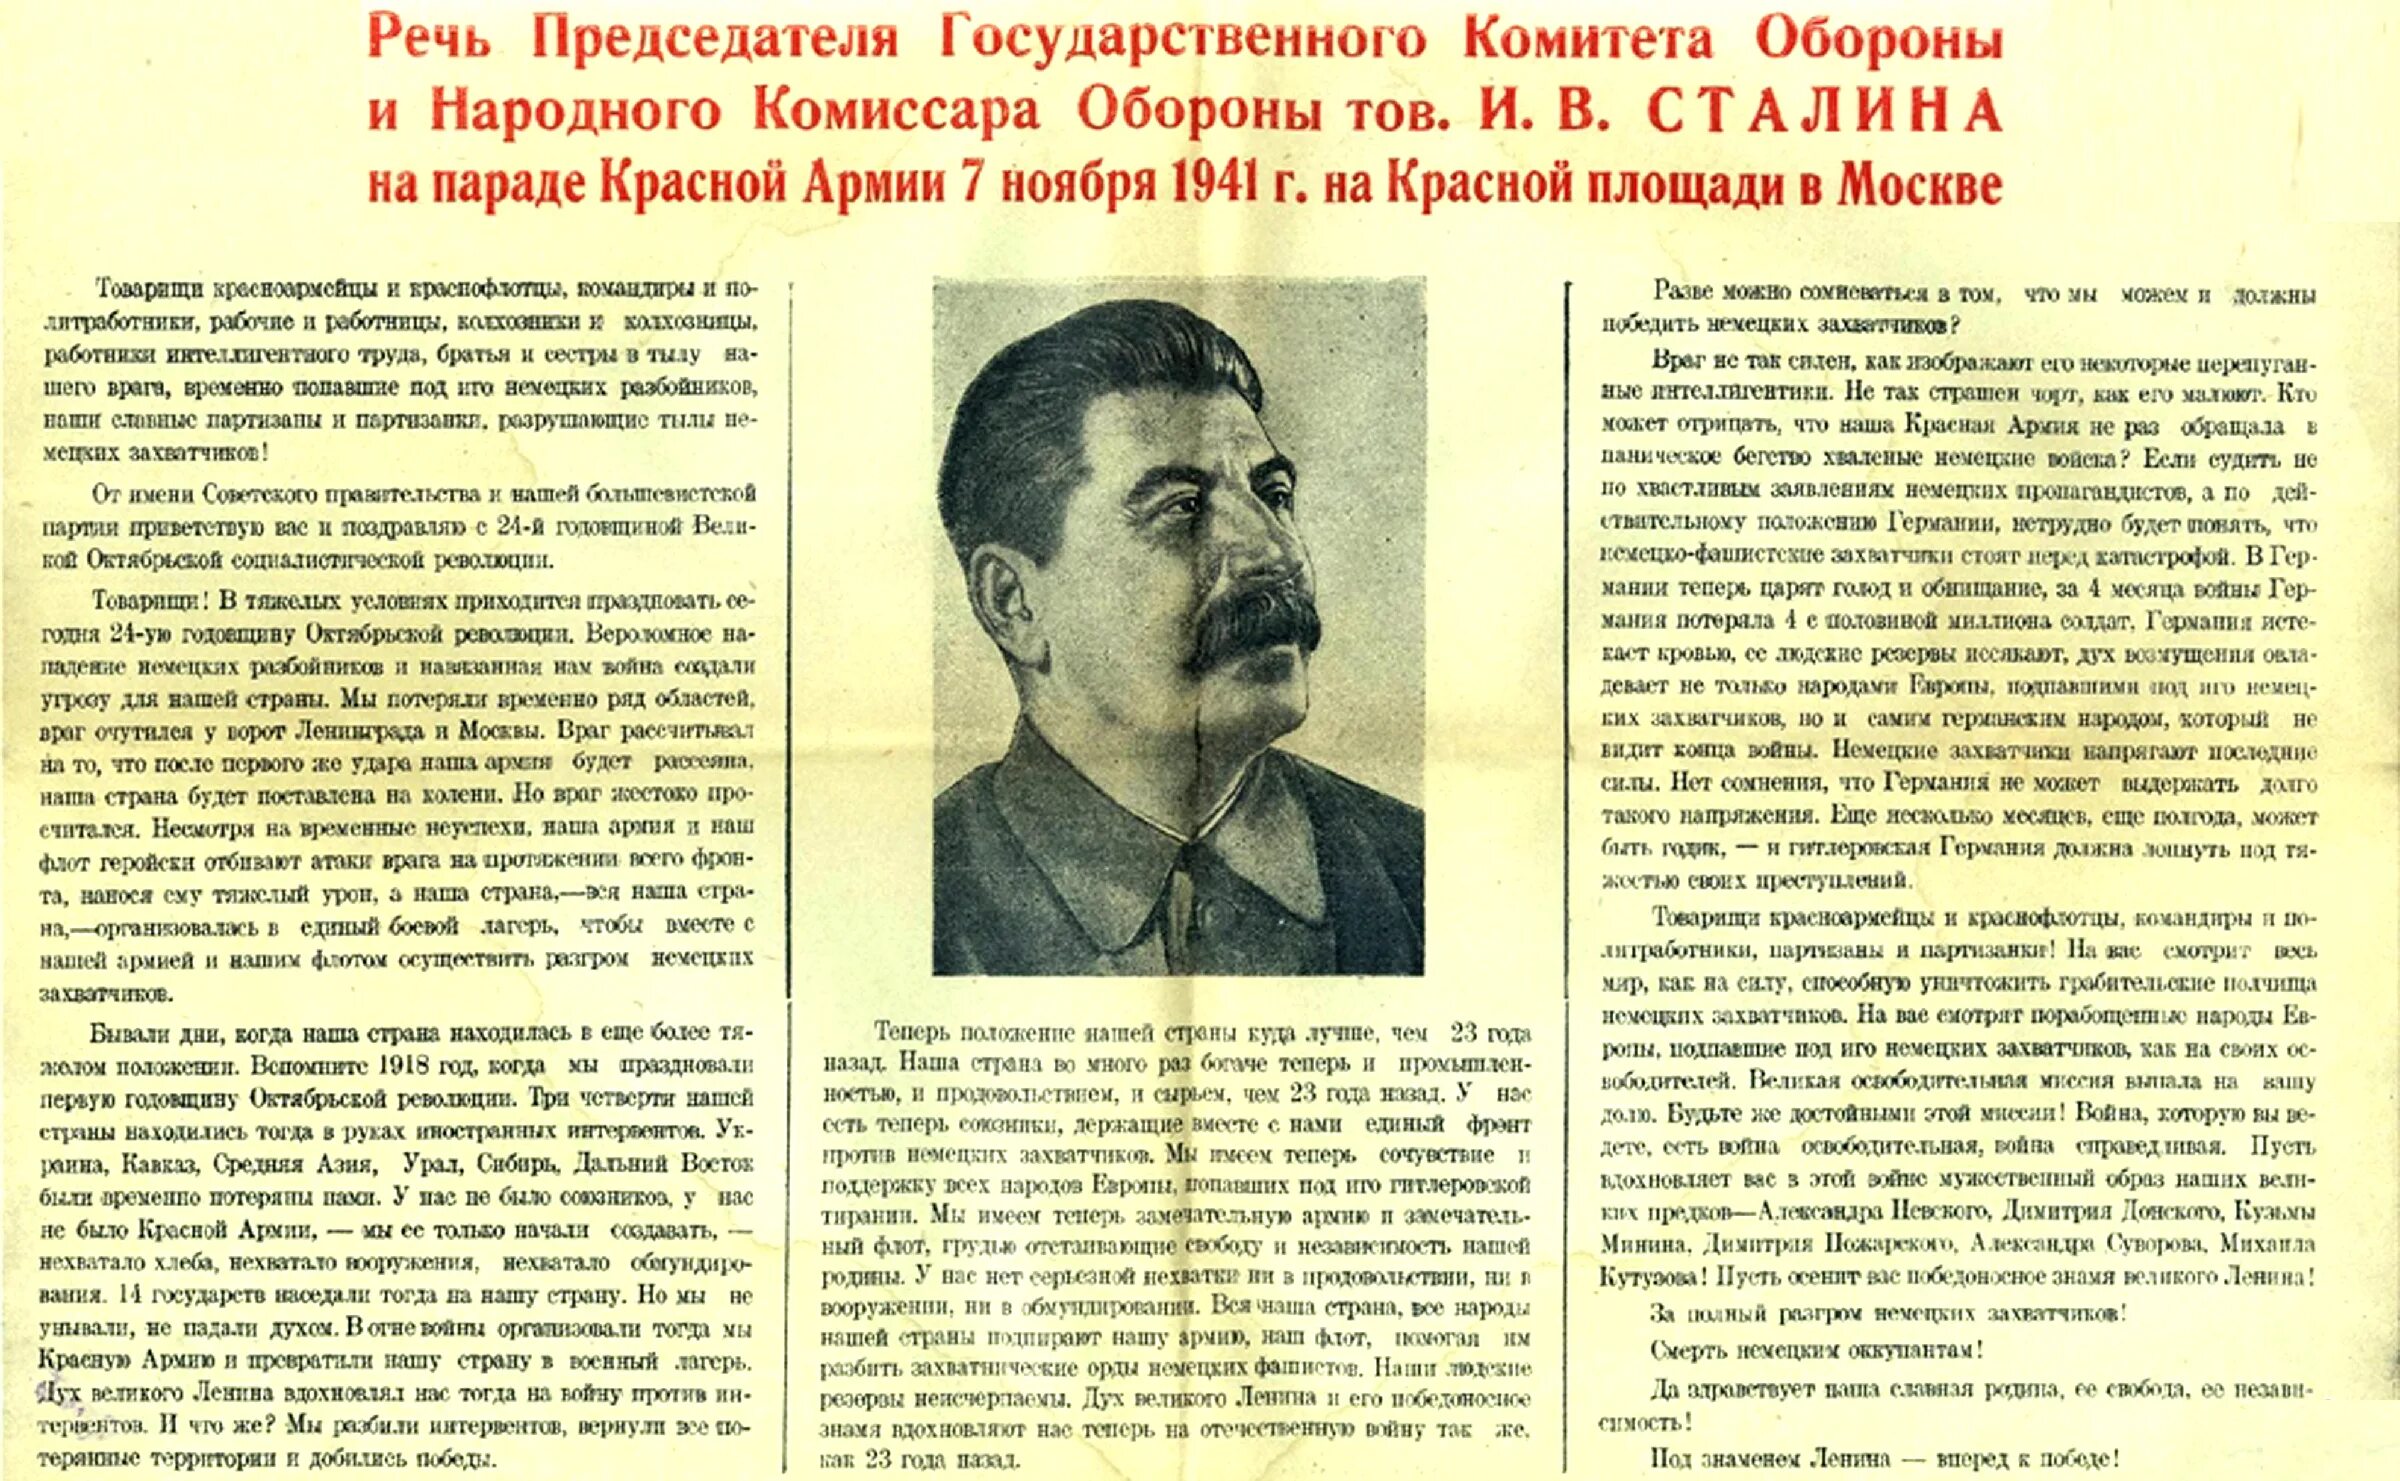 Доклад сталина 6 ноября выпустили на чем. Речь Сталина на параде 7 ноября 1941. Парад 7 ноября 1941 года в Москве на красной площади речь Сталина. Сталин 7 ноября 1941 года речь. Выступление Сталина в 1941 на красной площади.